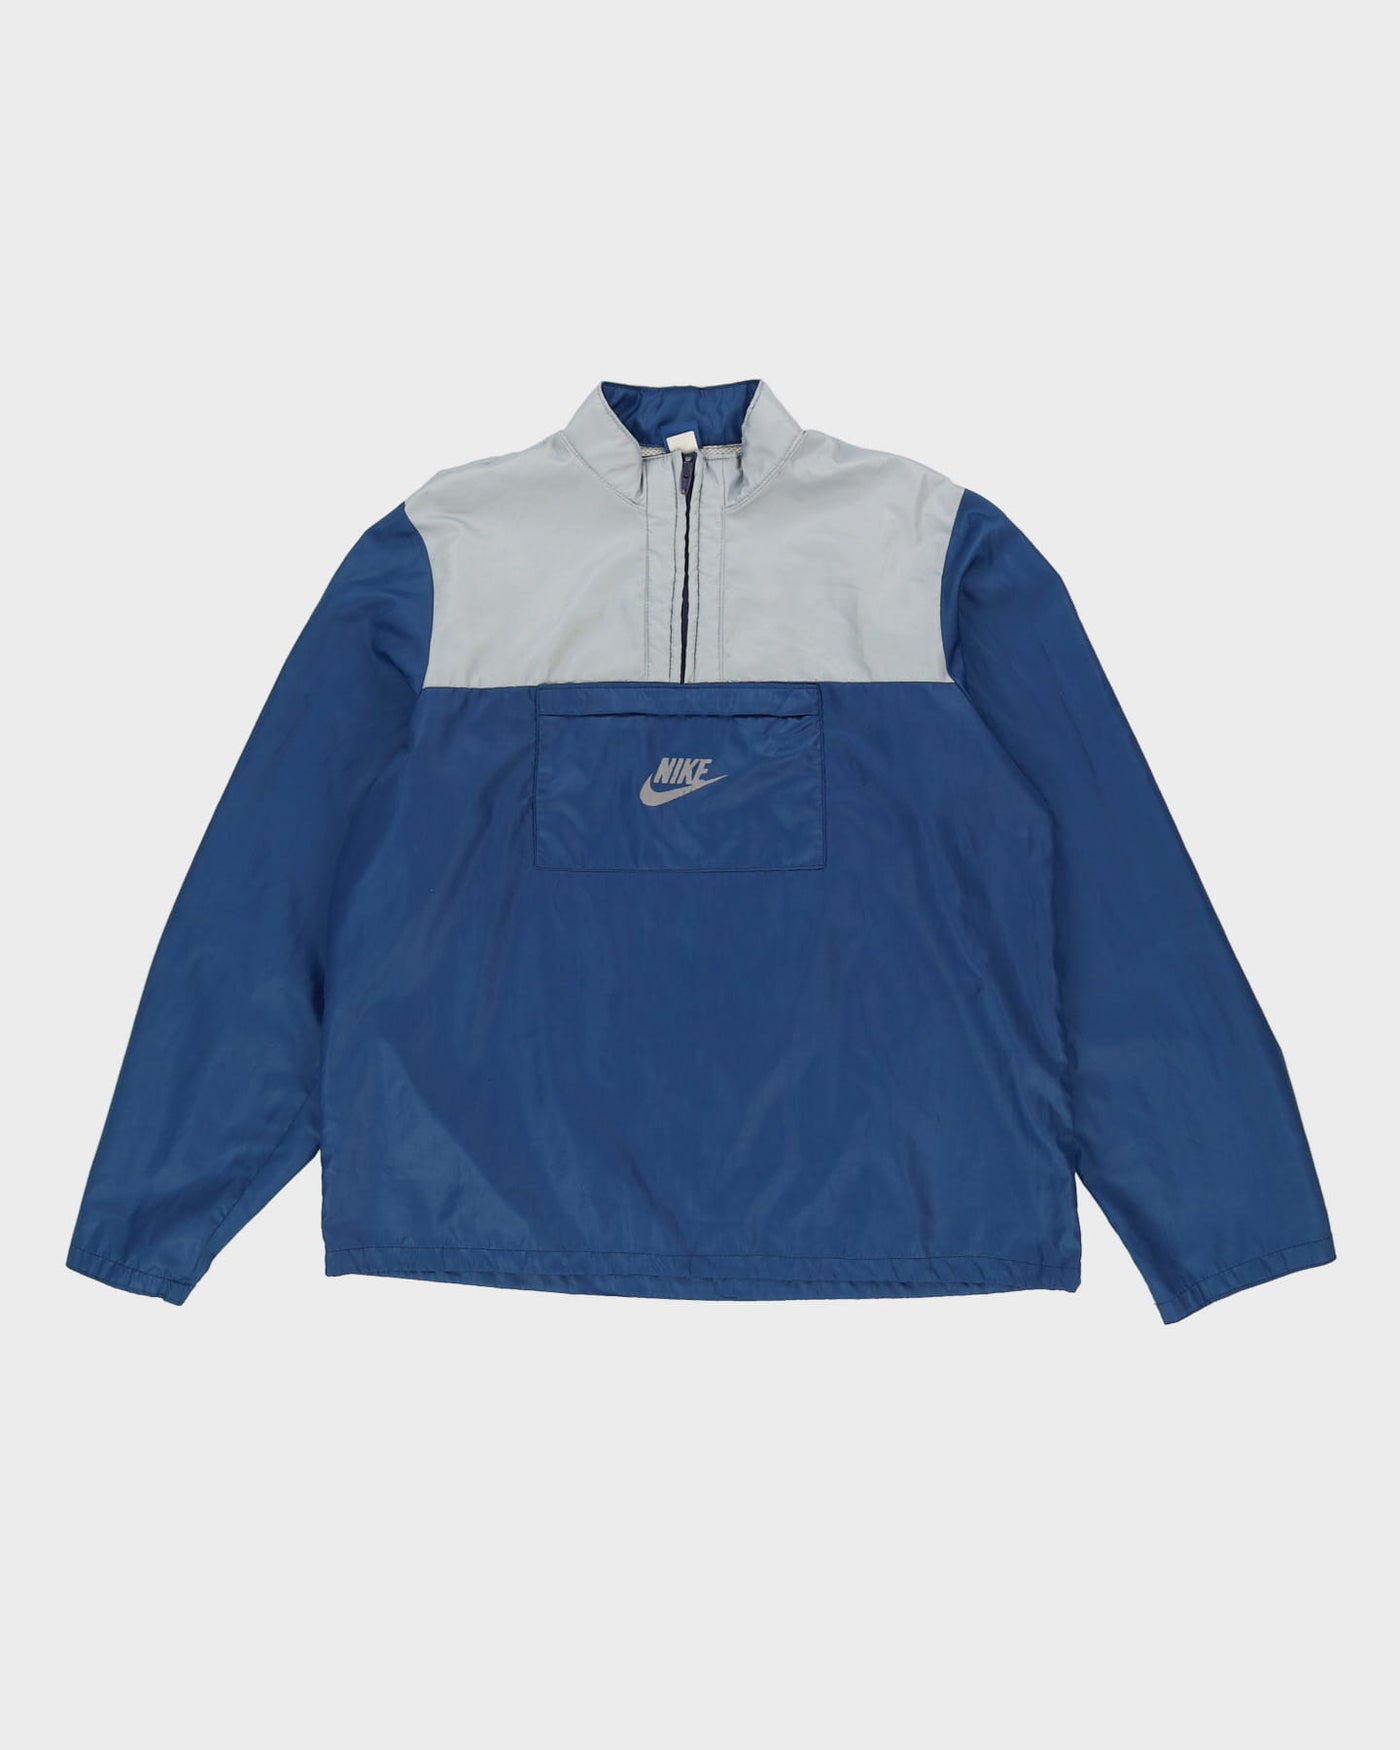 Veste coupe-vent surdimensionnée Nike bleu quart-zip vintage des années 80  - l – Rokit